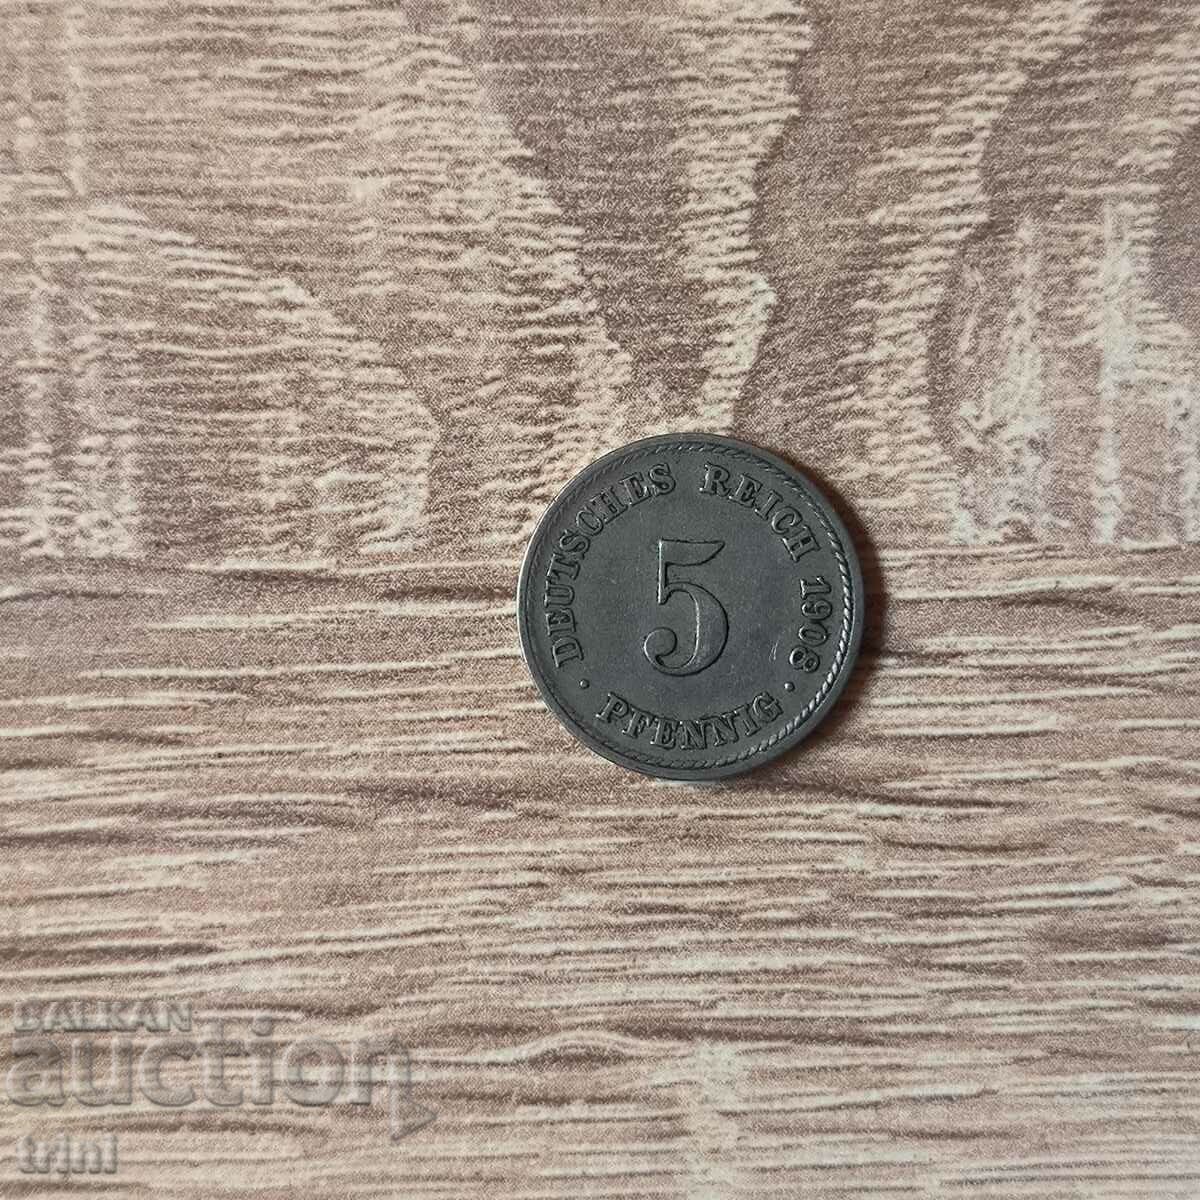 Γερμανία 5 pfennig 1908 έτος 'F' - Στουτγάρδη